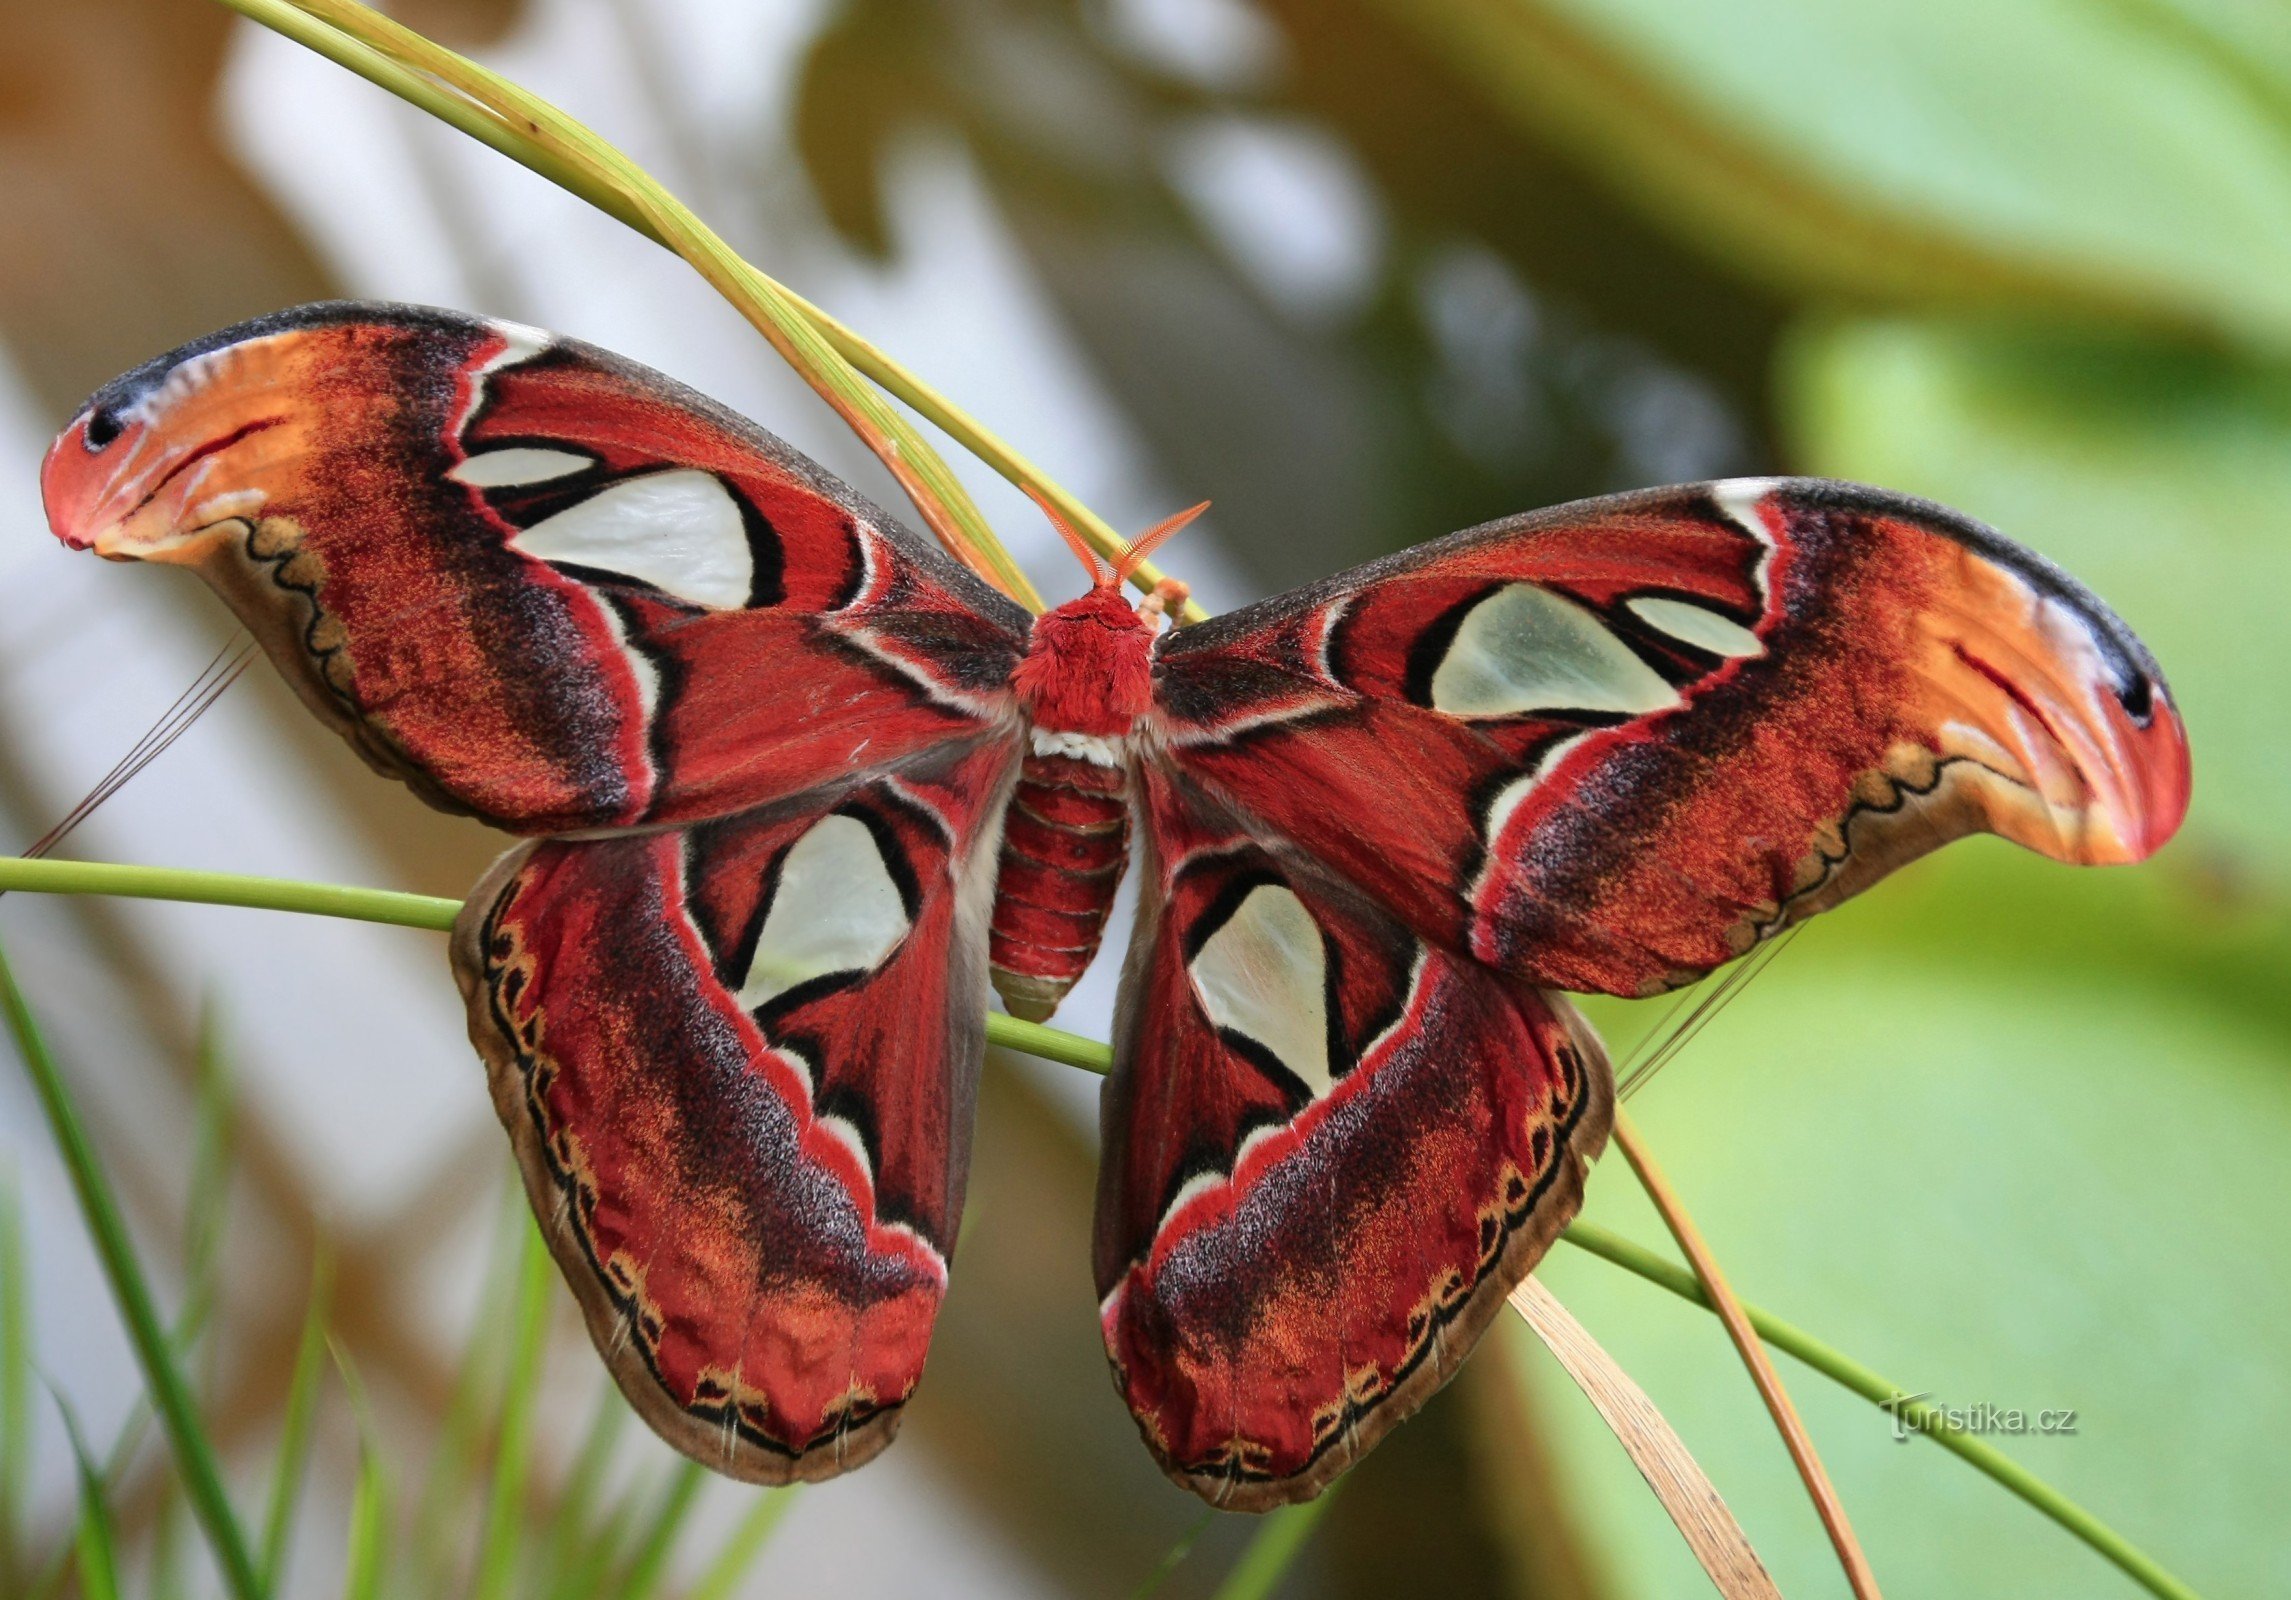 Botanični vrt Brno - Attacus atlas - največji metulj na svetu 12.9.2014